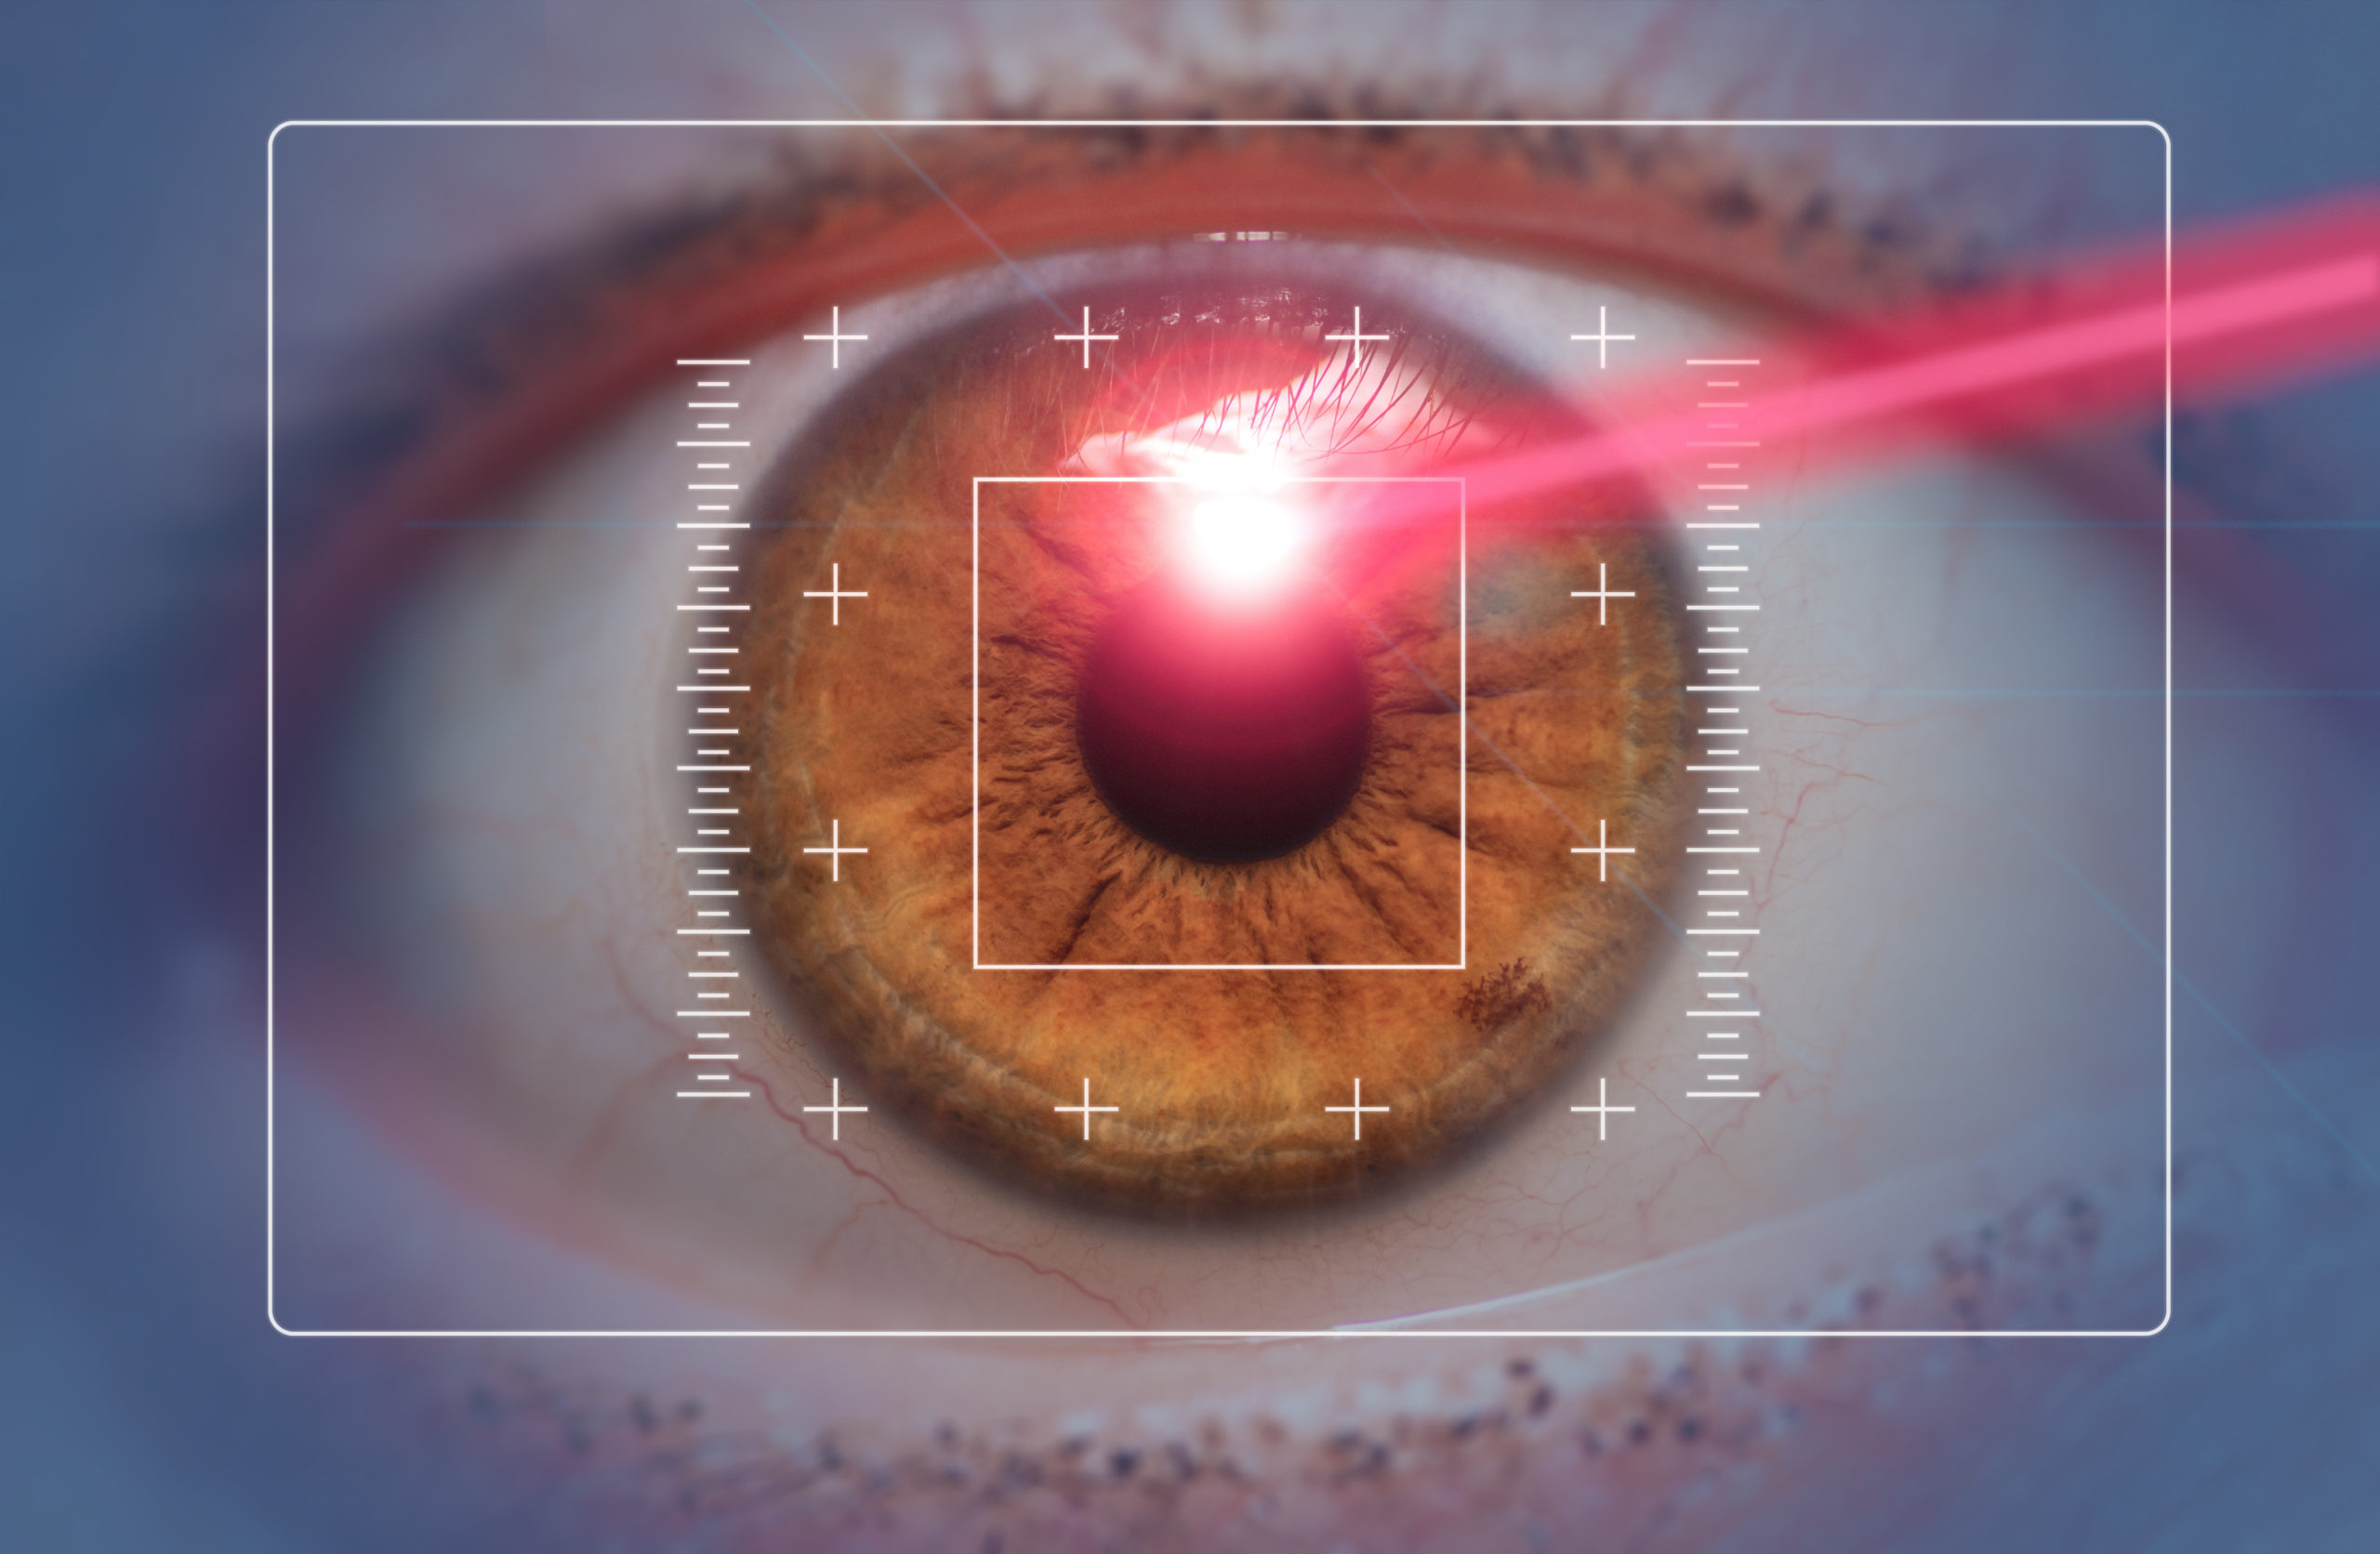 LASIK Eye Surgery Explained